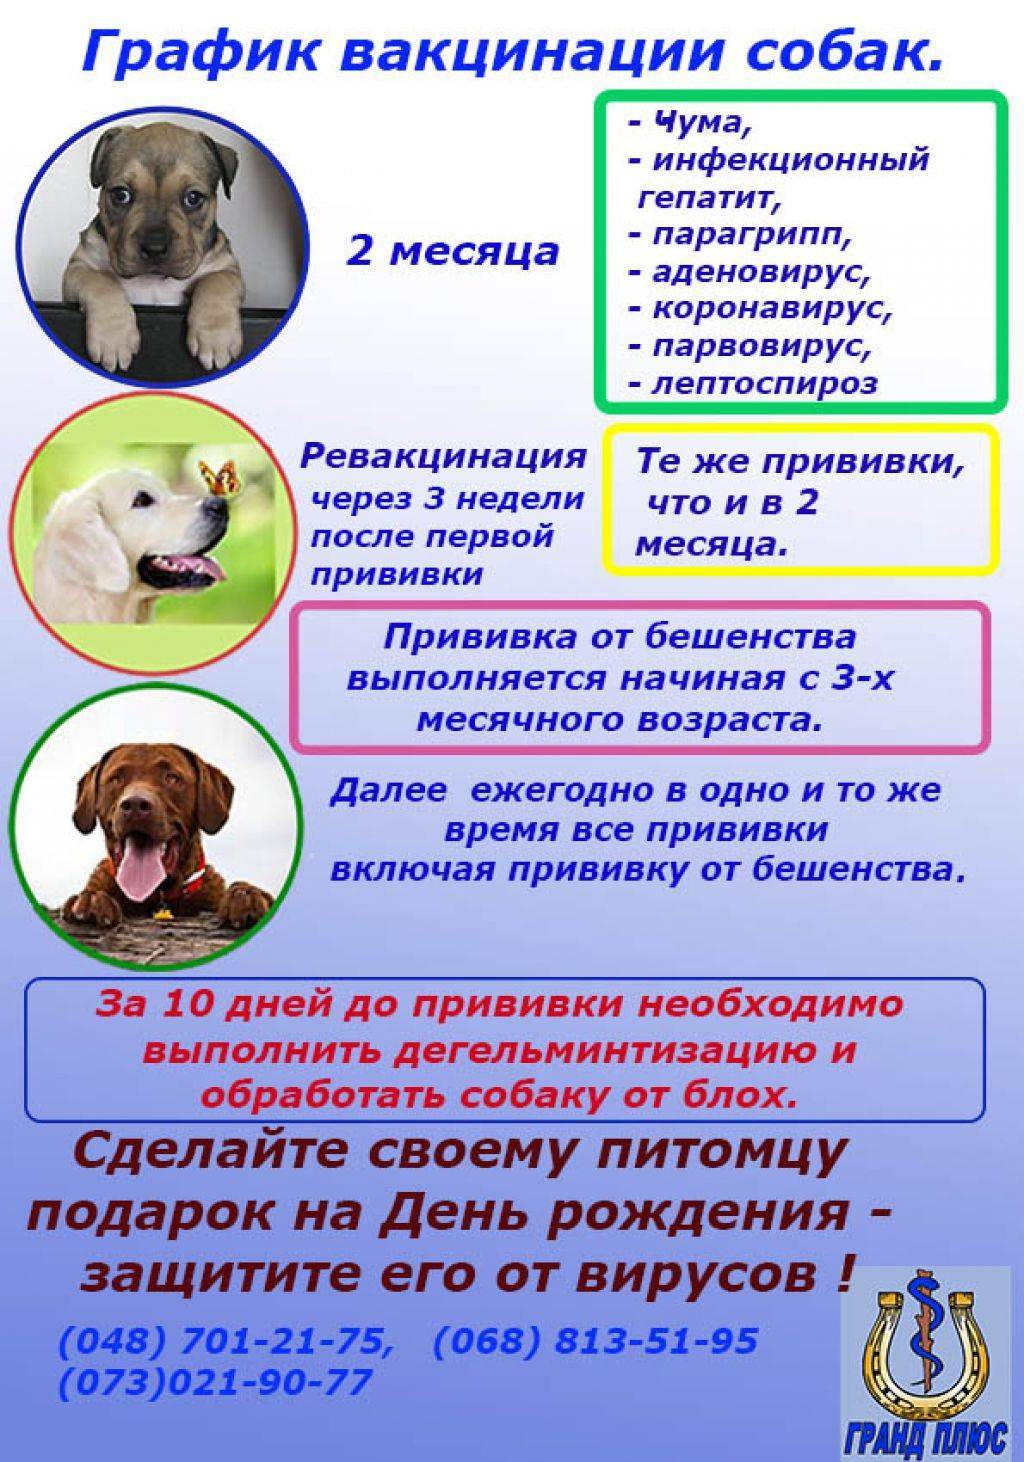 Глистогоним собаку перед прививкой: план-график, обзор препаратов